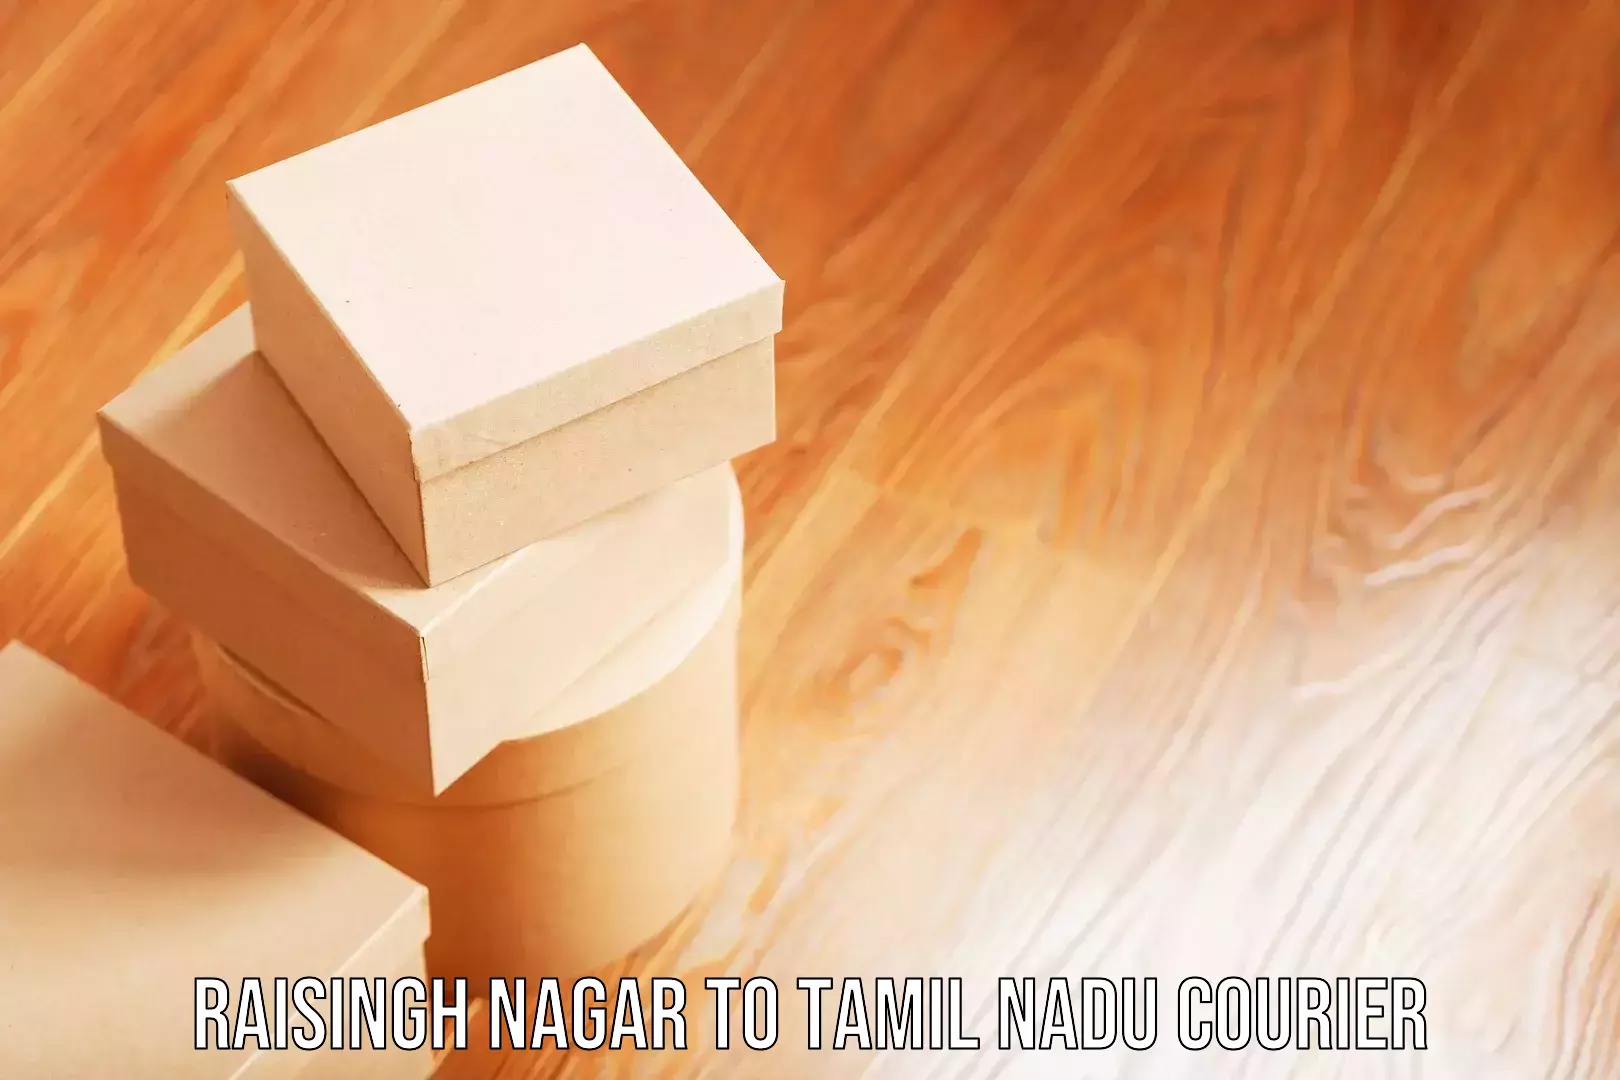 Baggage shipping quotes Raisingh Nagar to Tamil Nadu